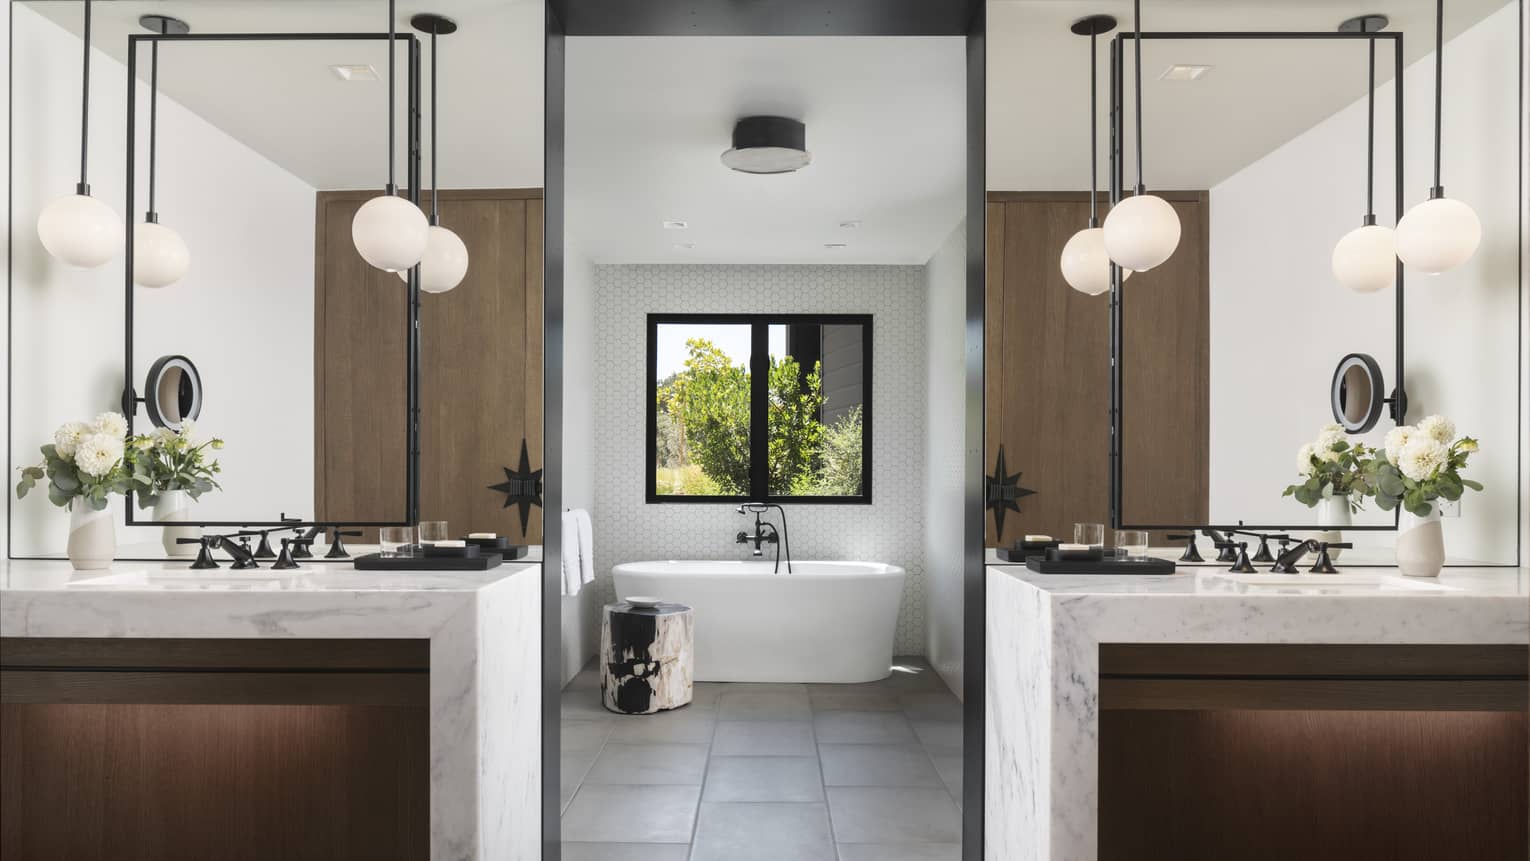 Large bathroom with two marble vanities, tile floor, standalone tub, window